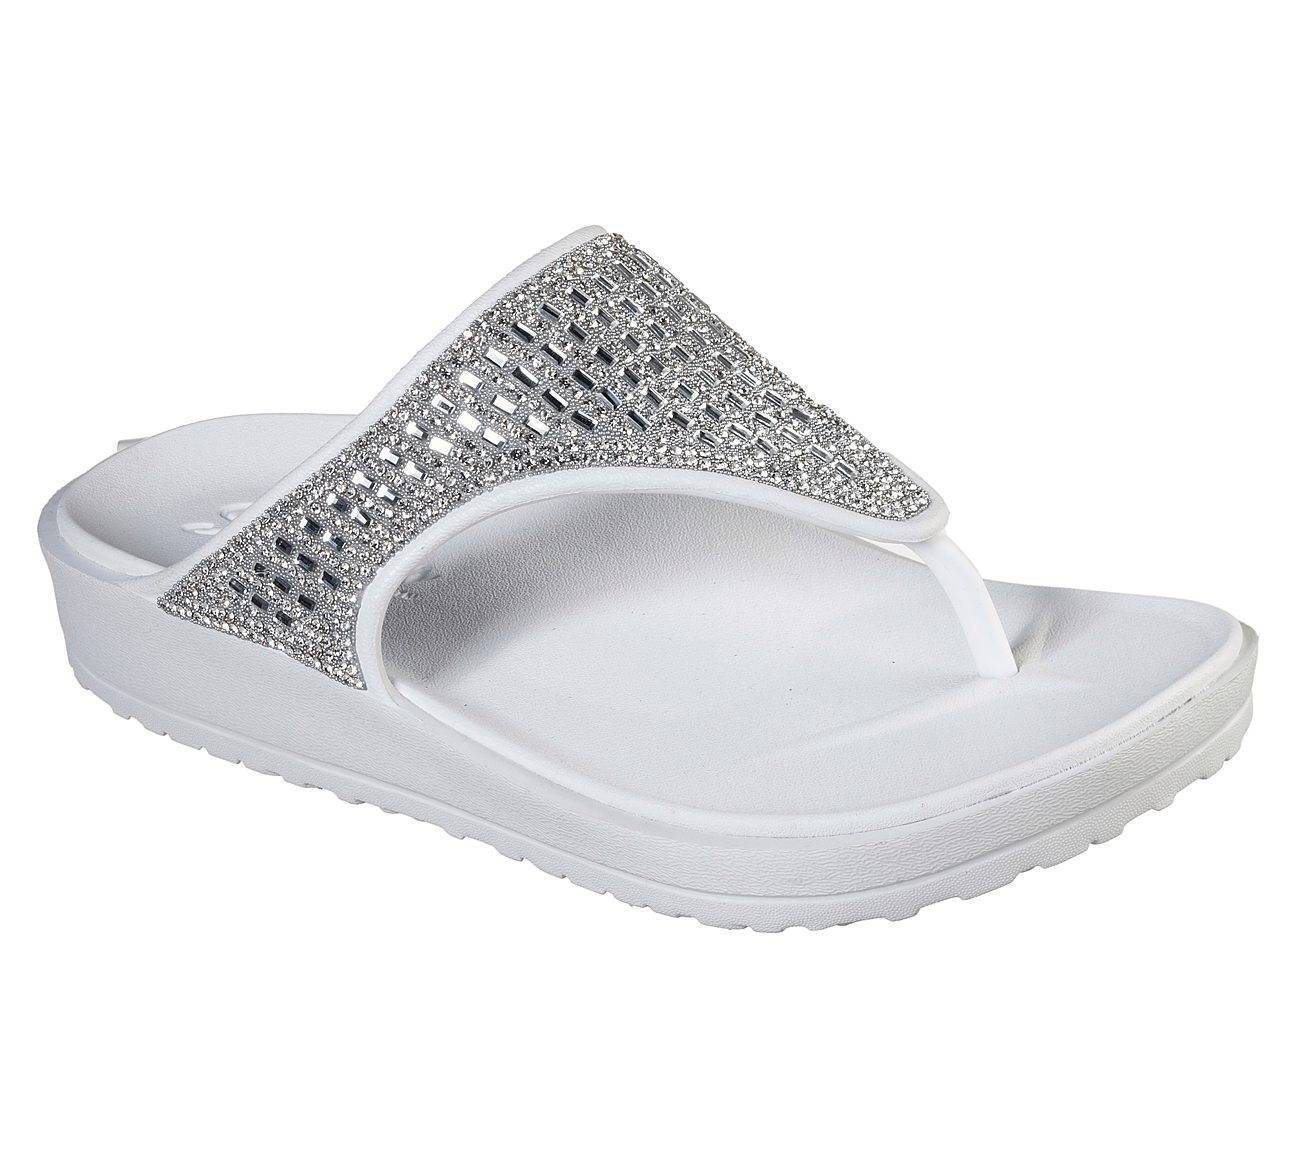 Sandalia de la marca Skechers modelo 111059 en color blanco. Sandalia de dedo con una sola pieza, diseño de pedrería pequeña y grande que proporciona un efecto brillante. Plantilla contorneada Luxe Foam.